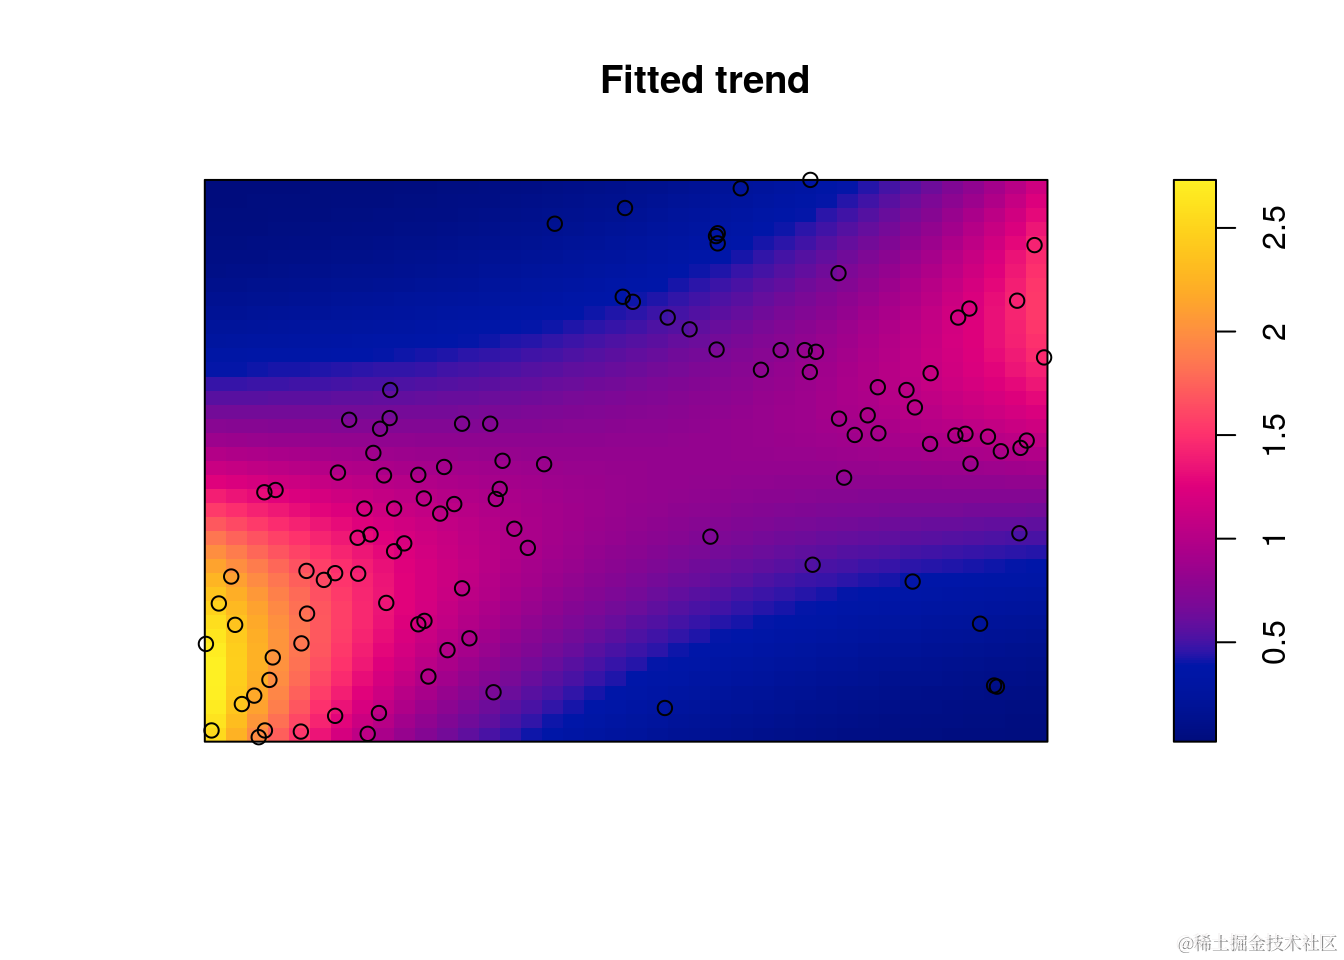 R语言生态学种群空间点格局分析：聚类泊松点过程对植物、蚂蚁巢穴分布数据可视化_数据_17